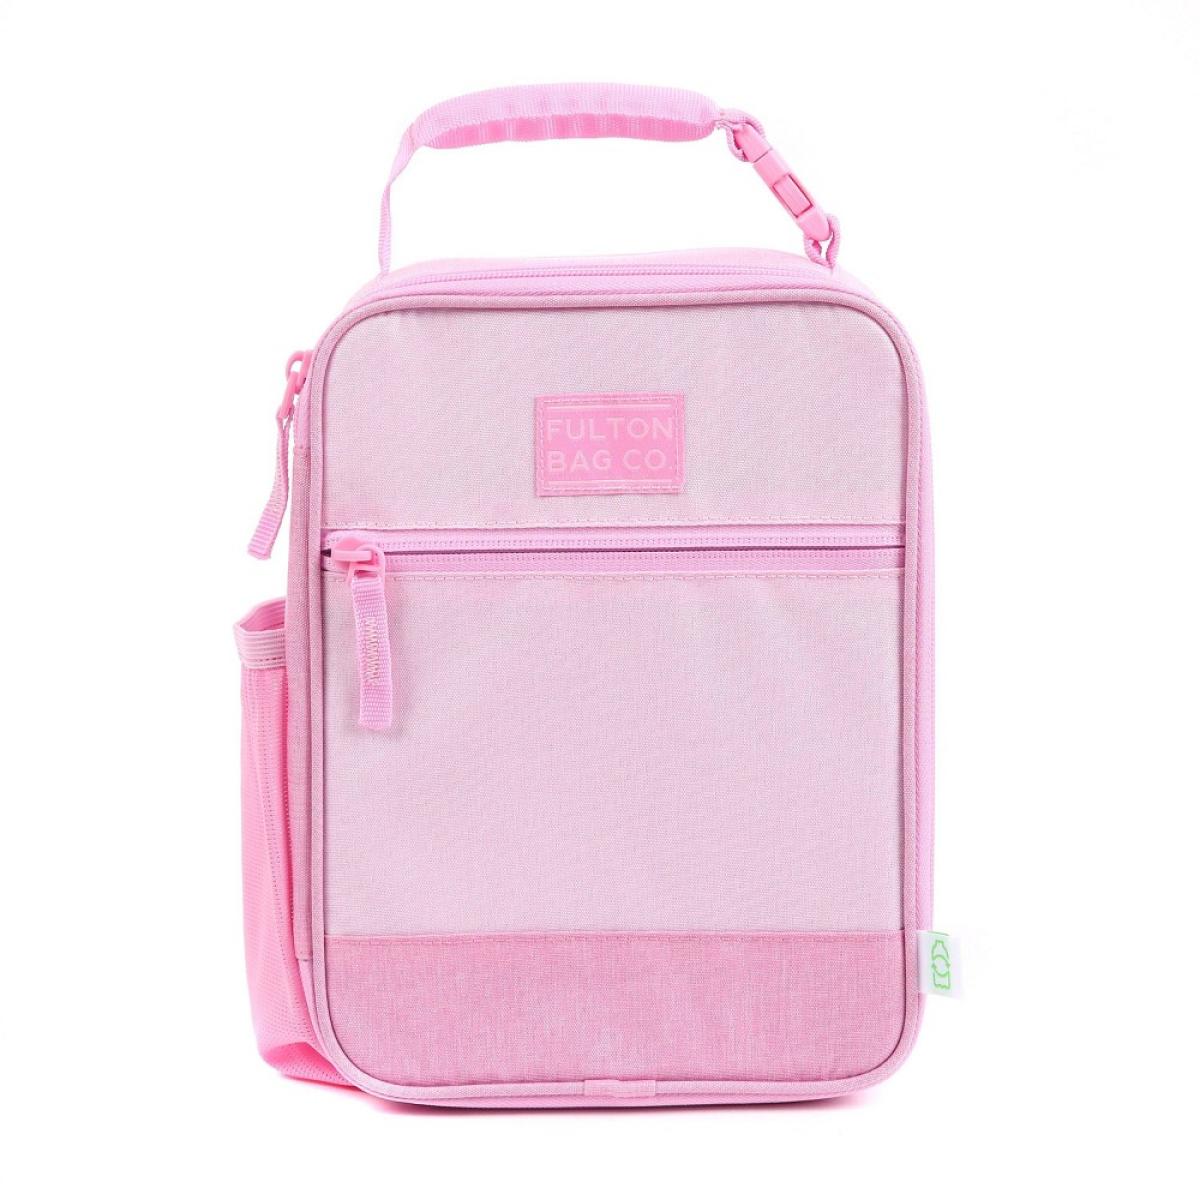 Fulton Bag Co. Upright Lunch Bag - Ballet Pink